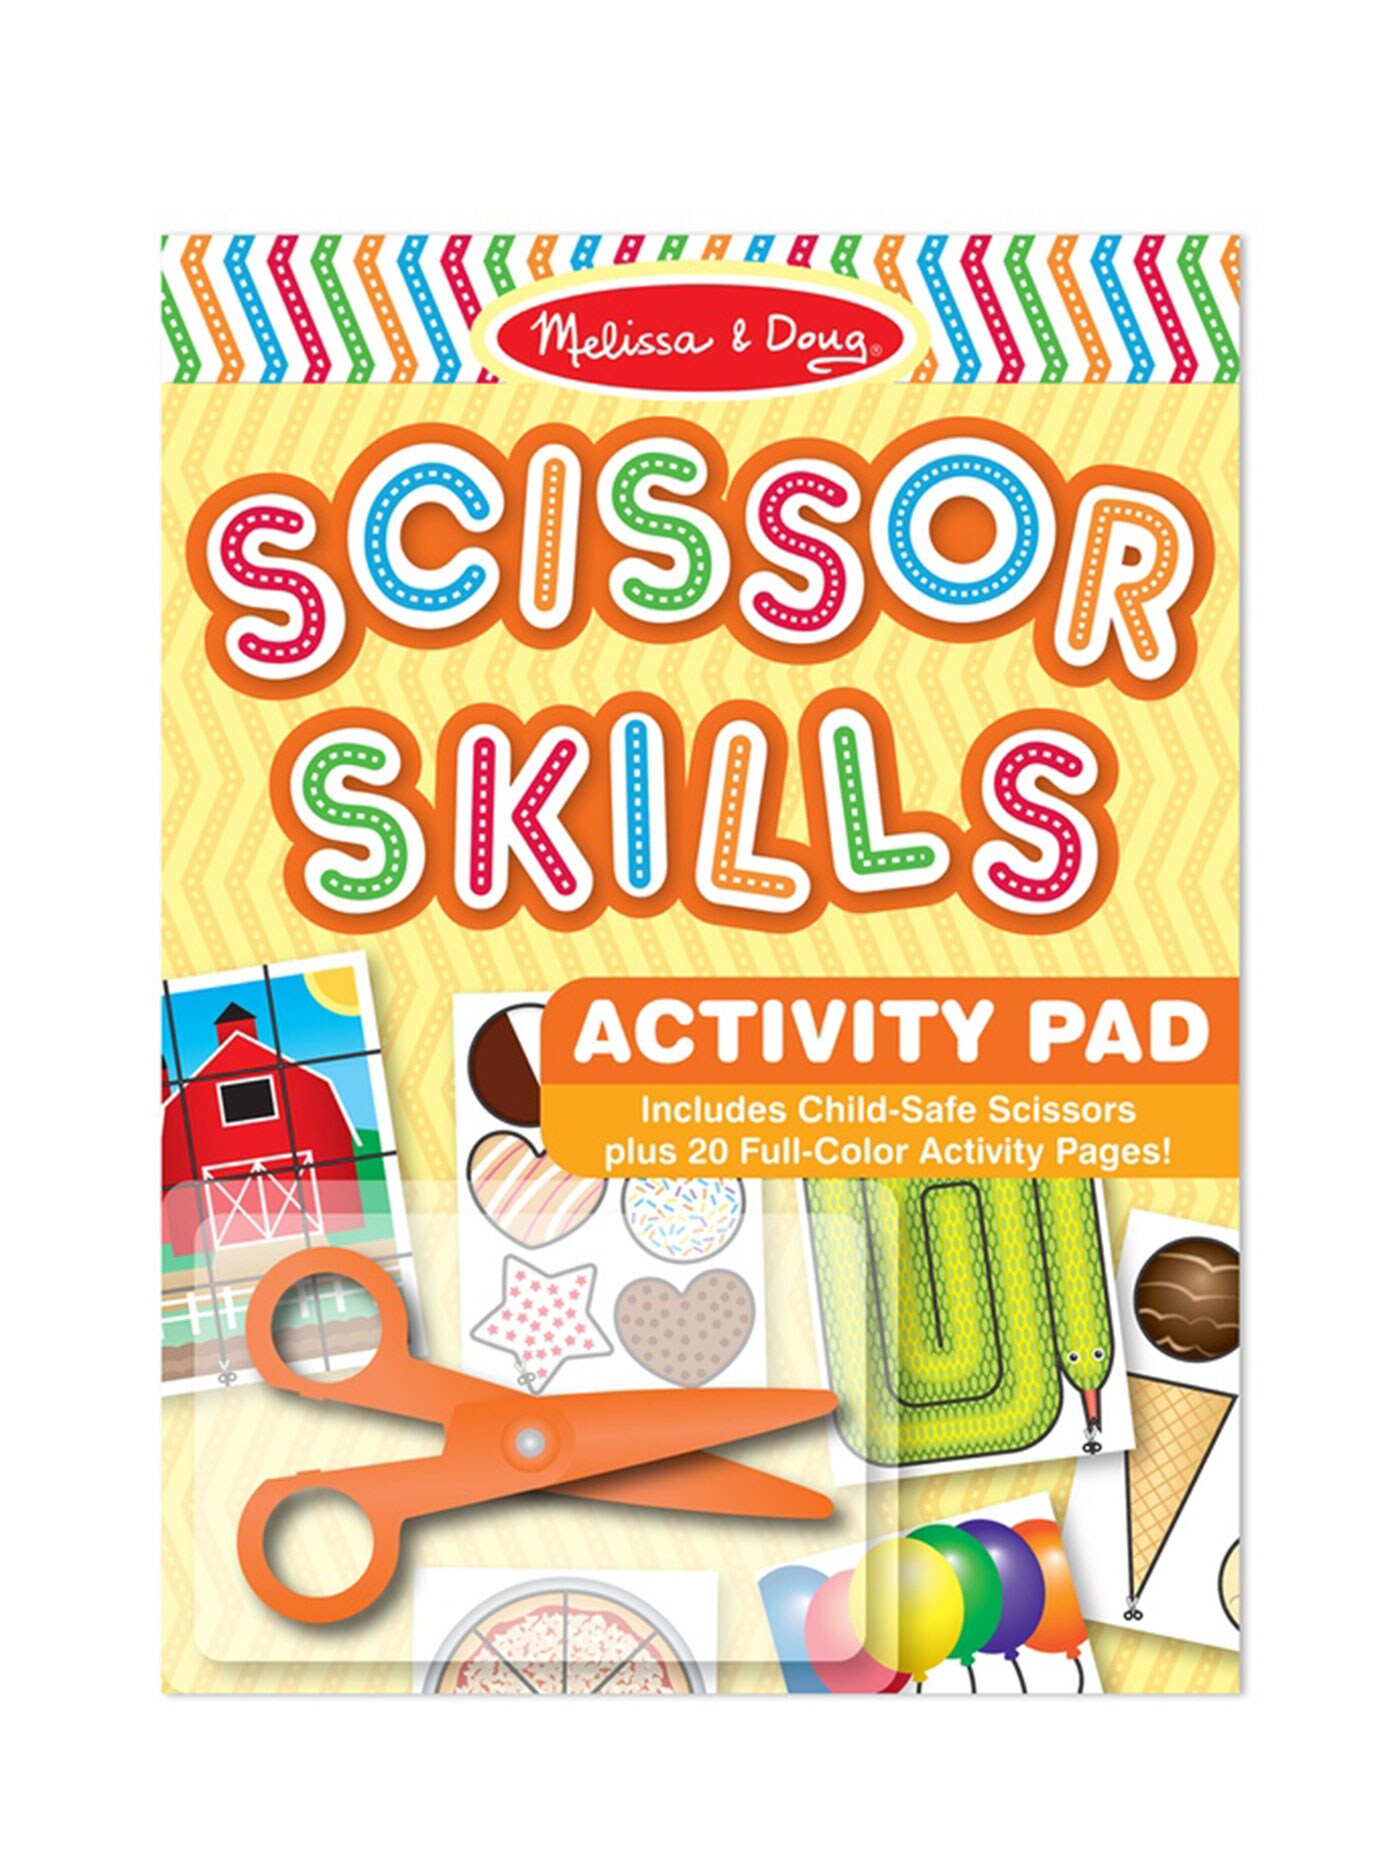 [20แผ่น+กรรไกรเซฟตี้] รุ่น 2304 ชุดกรรไกรฝึกตัดสำหรับเด็กMelissa & Doug Scissors Skills Activity Book รีวิวดีใน Amazon USA กรรไกรไม่คม ปลอดภัย ของเล่น มาลิซ่า 4 ขวบ